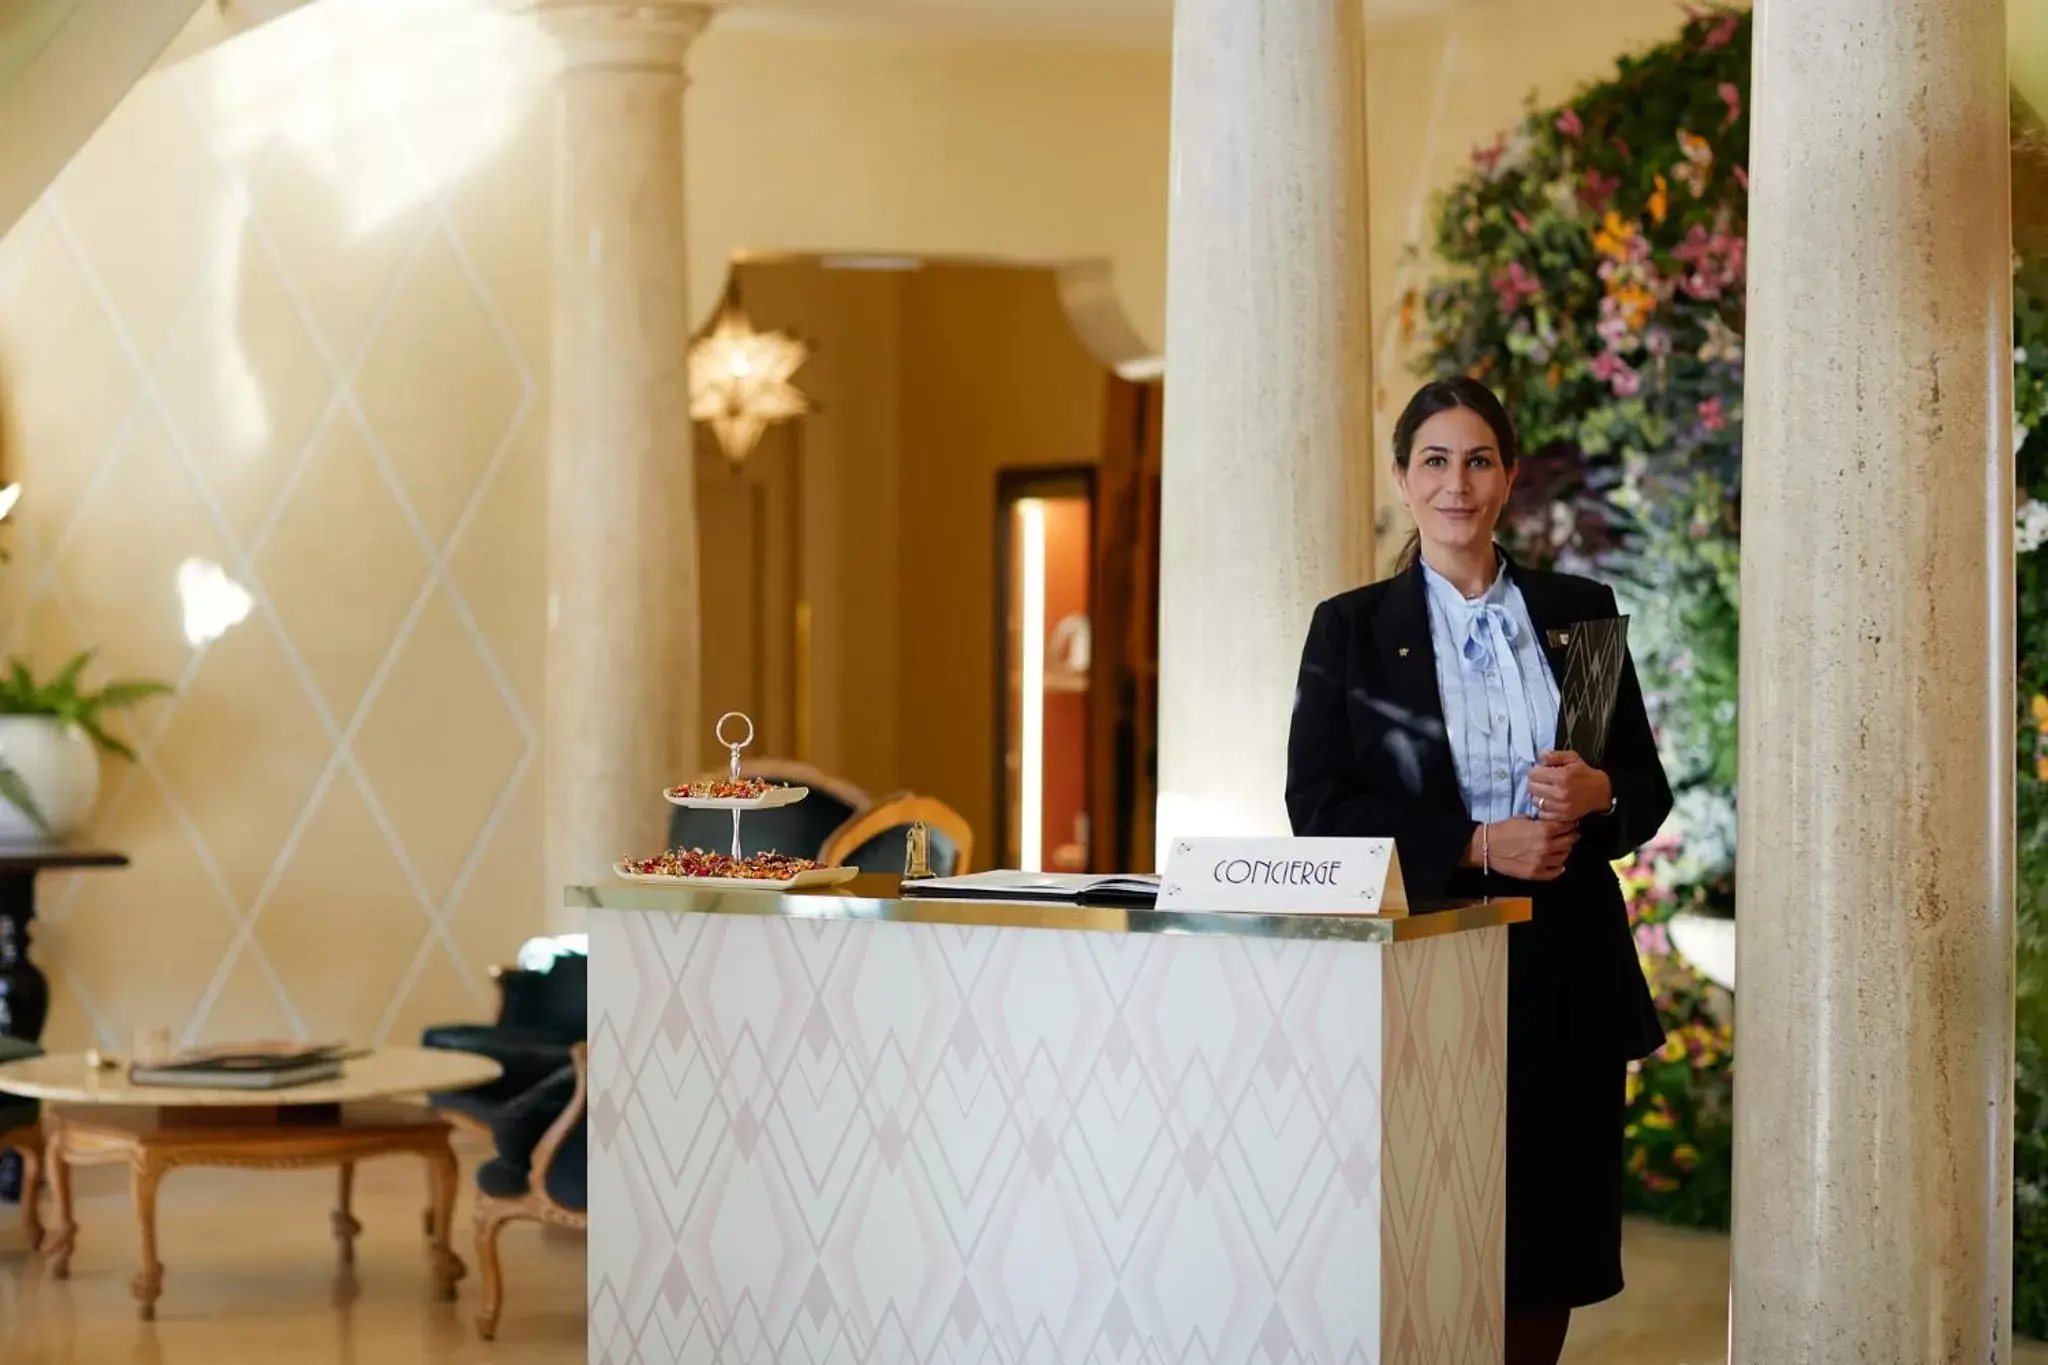 Staff, Lobby/Reception in Villa Principe Leopoldo - Ticino Hotels Group